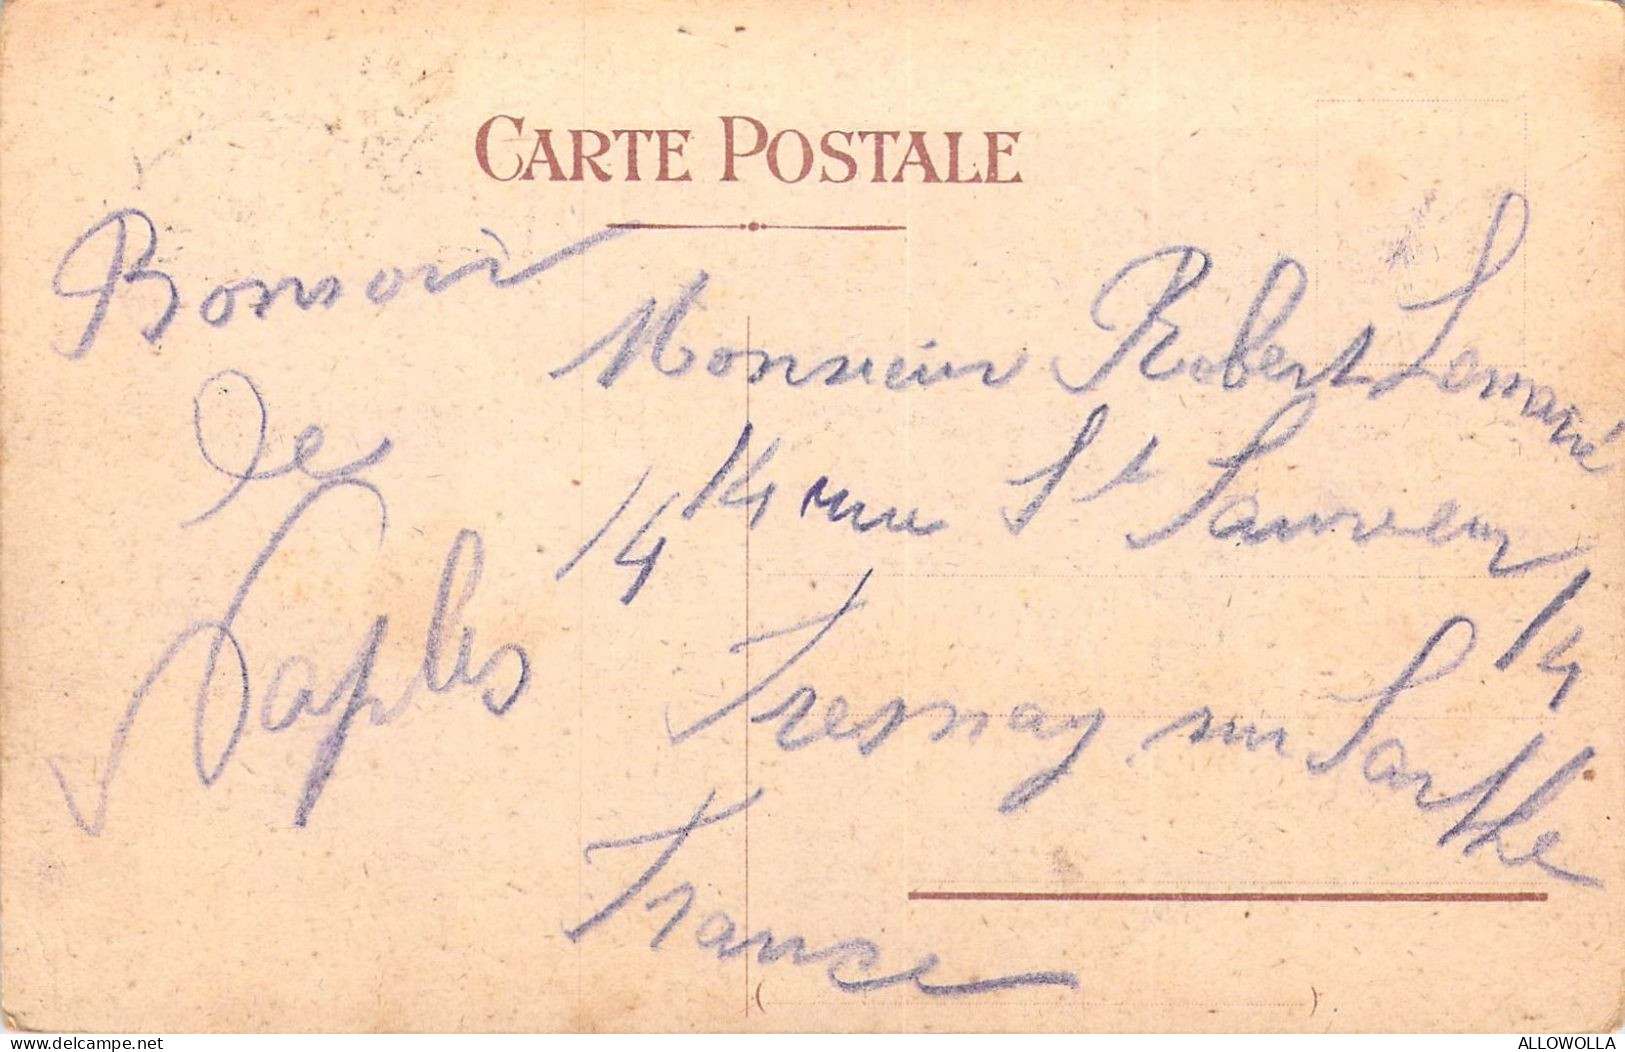 25913 " NAPOLI-VIA CARACCIOLO CON PESCATORI "-VERA FOTO-CART.POST. SPED.1908 - Casoria